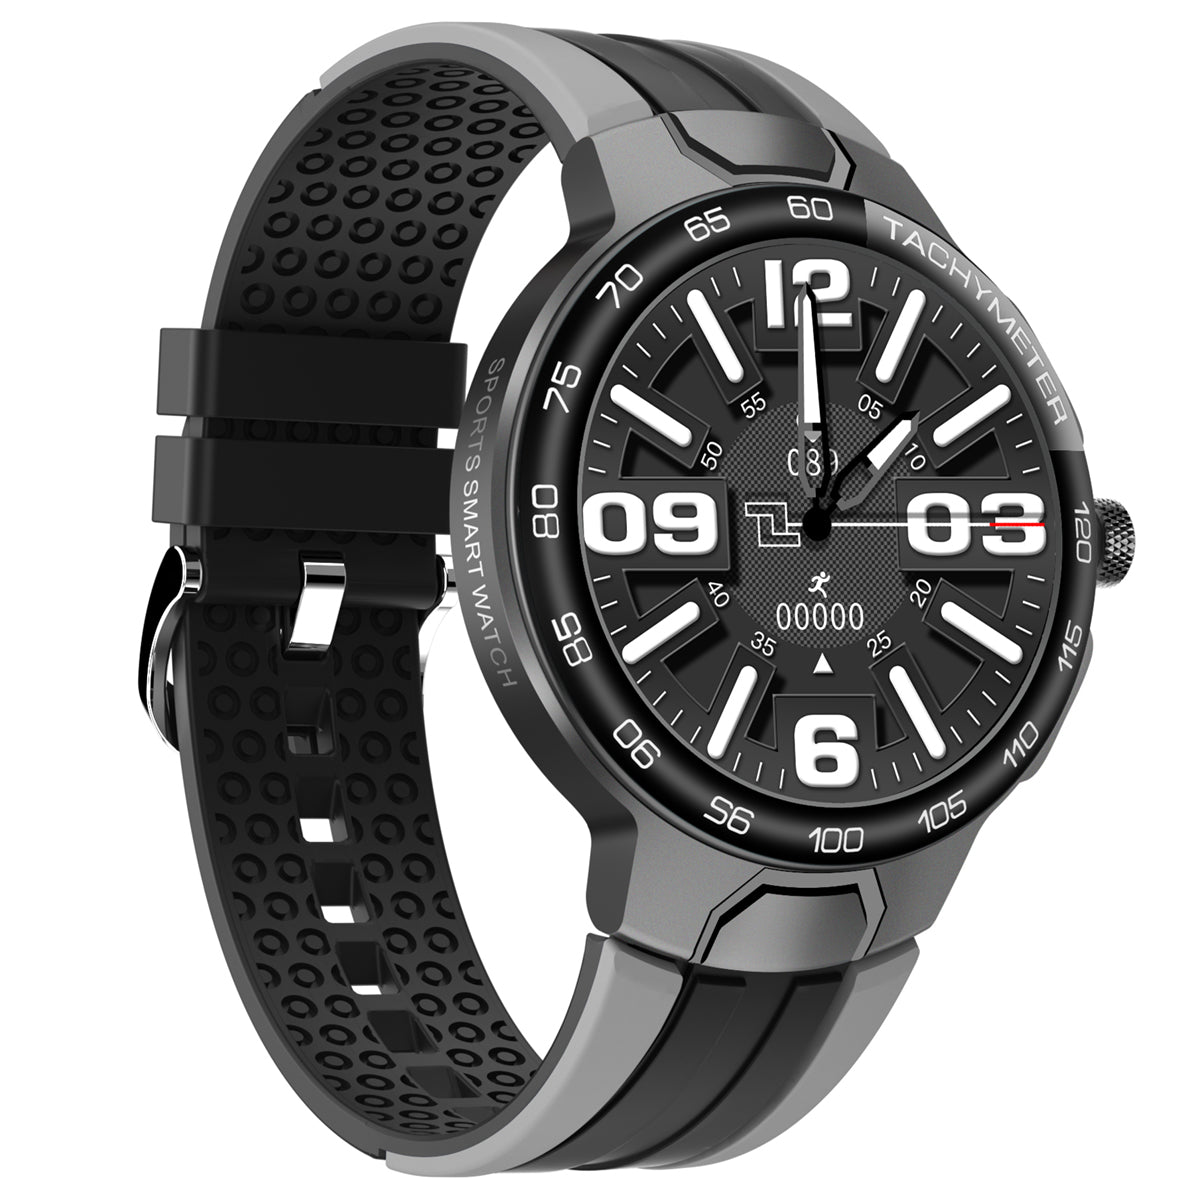 Smartwatch Reloj Inteligente Fulltouch E15 Original Fralugio